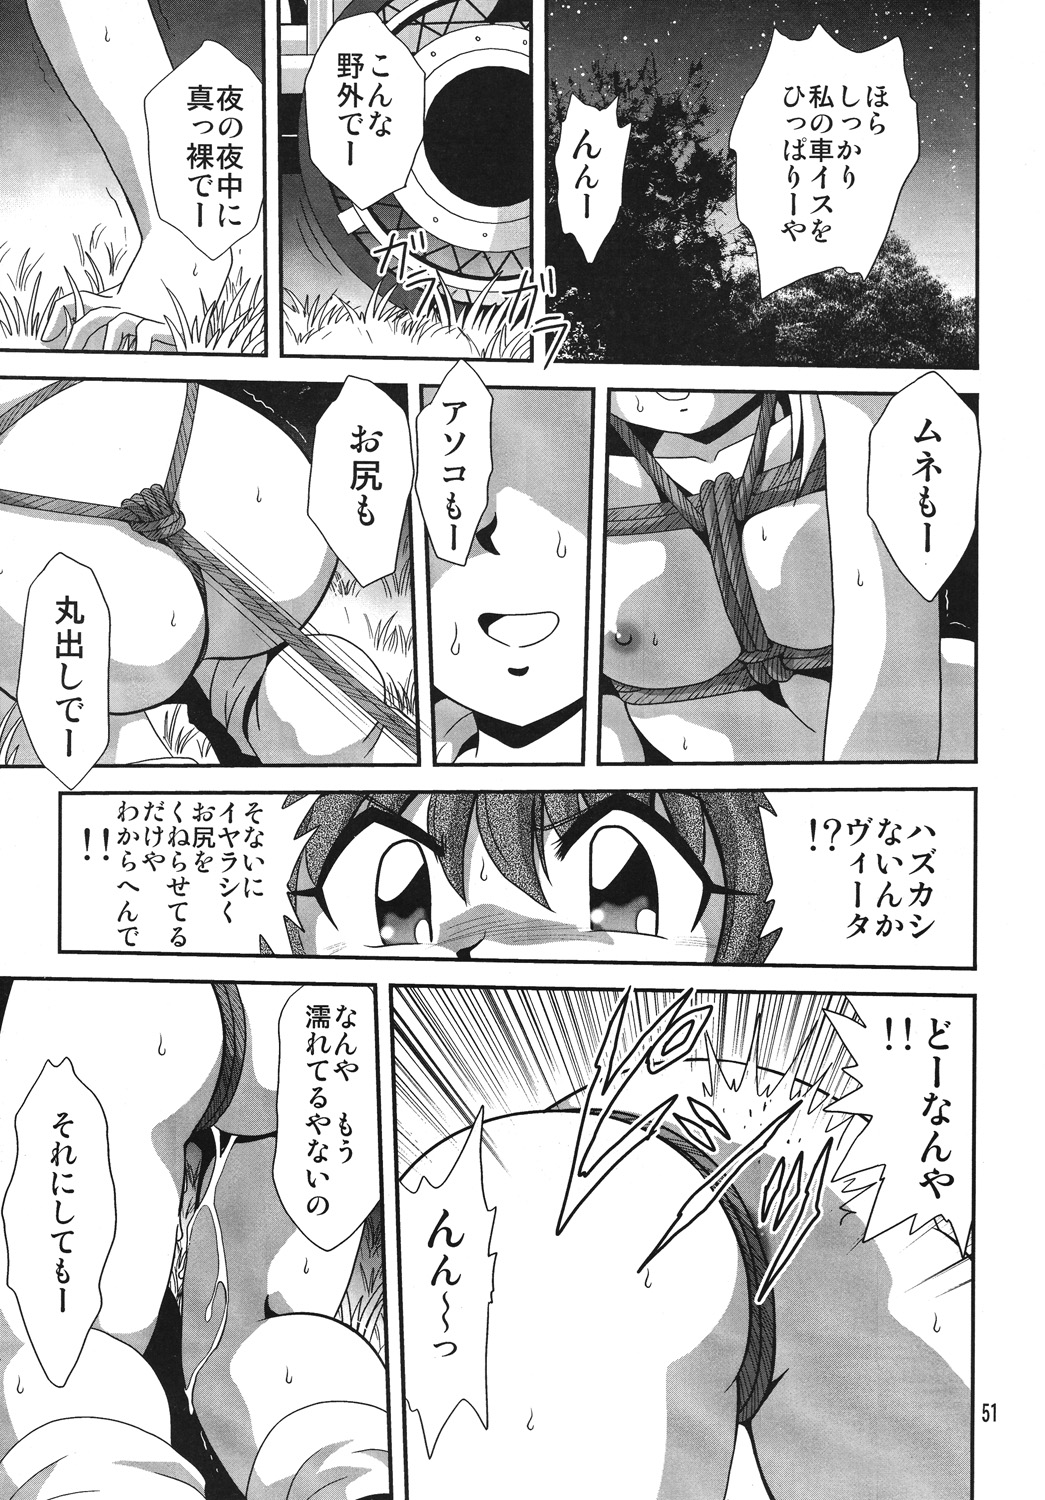 [Thirty Saver Street 2D Shooting] Storage Ignition 4 (Mahou Shoujo Lyrical Nanoha / Magical Girl Lyrical Nanoha) page 50 full